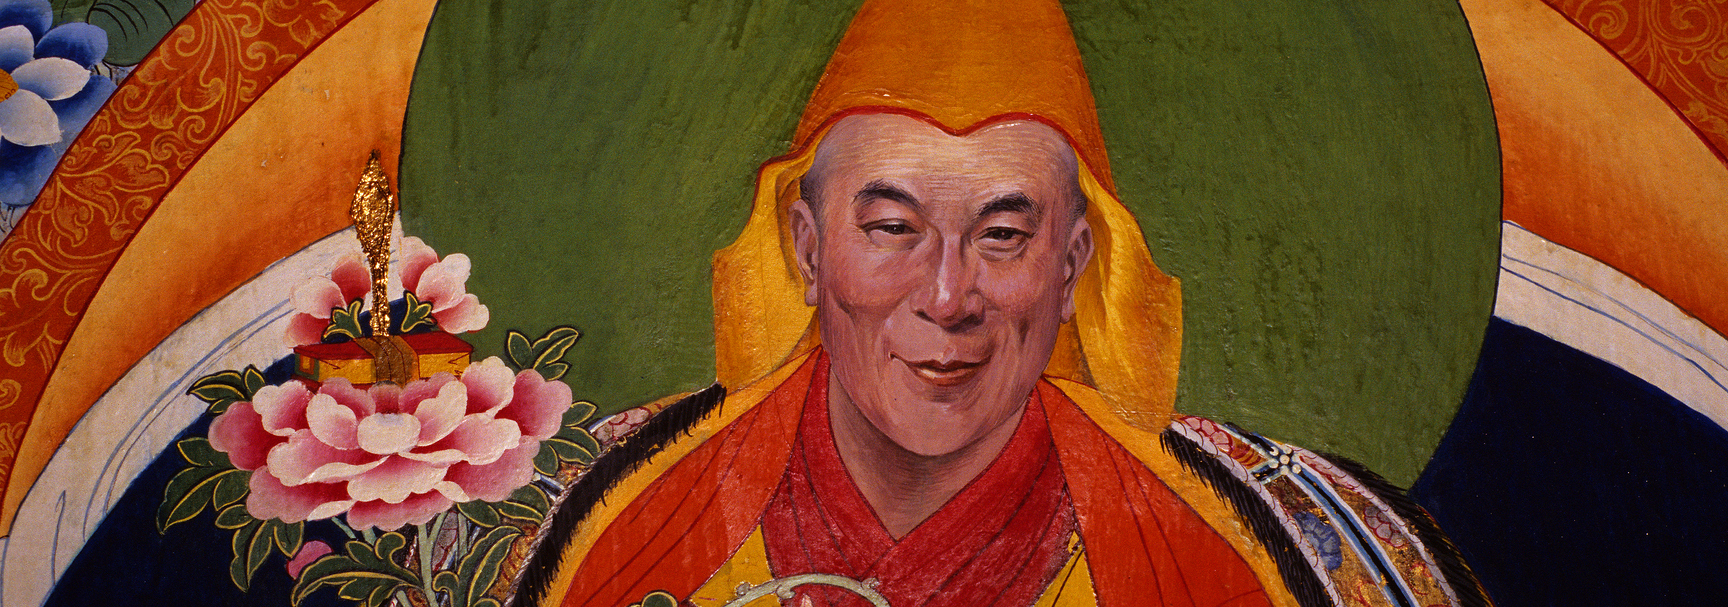 Le più belle frasi del Dalai Lama